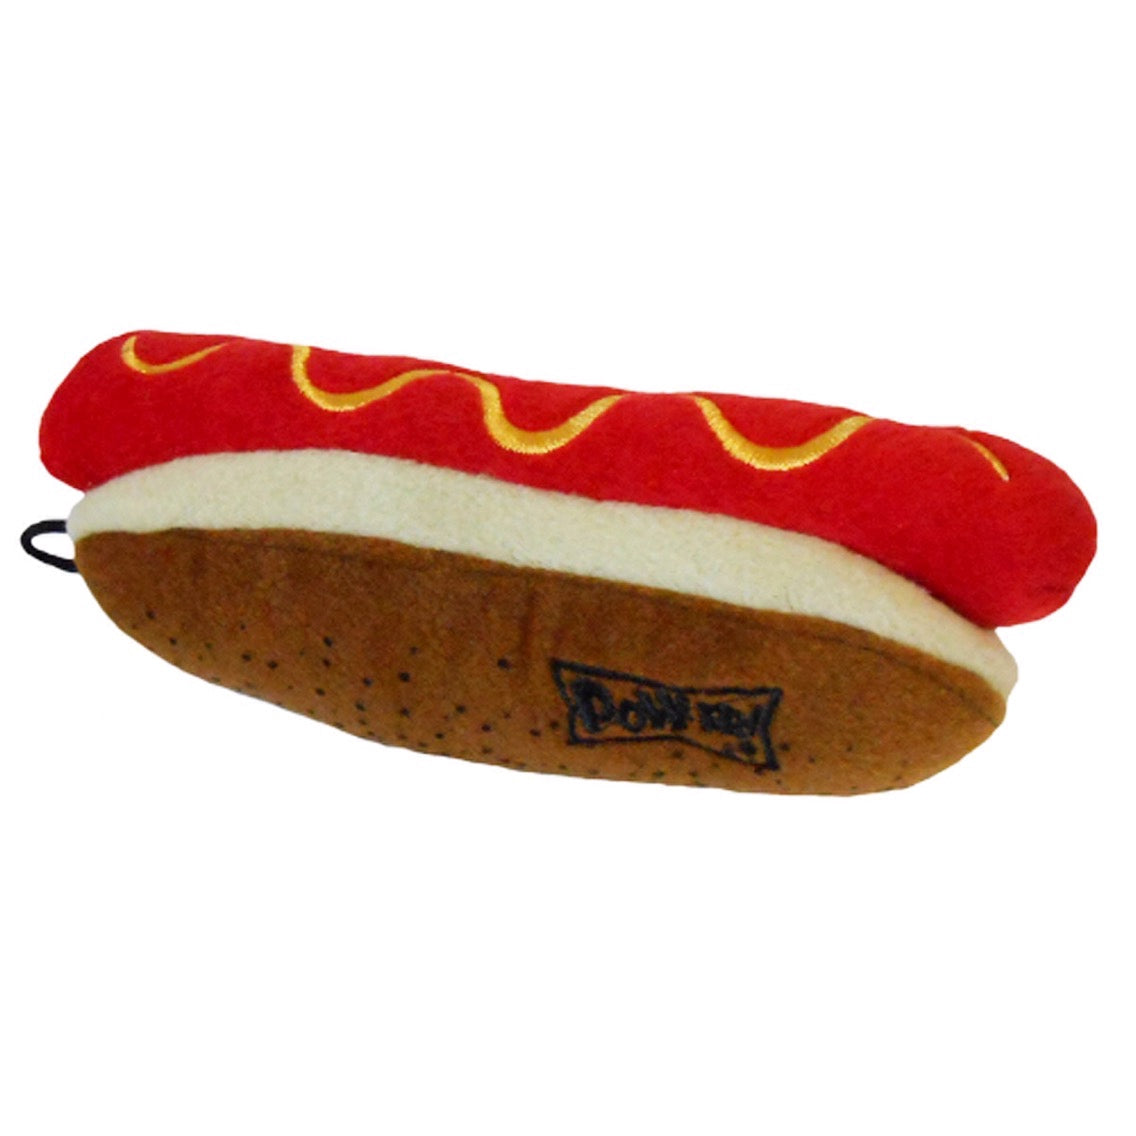 Dog Toy - Hotdog Toy - 2 Sizes